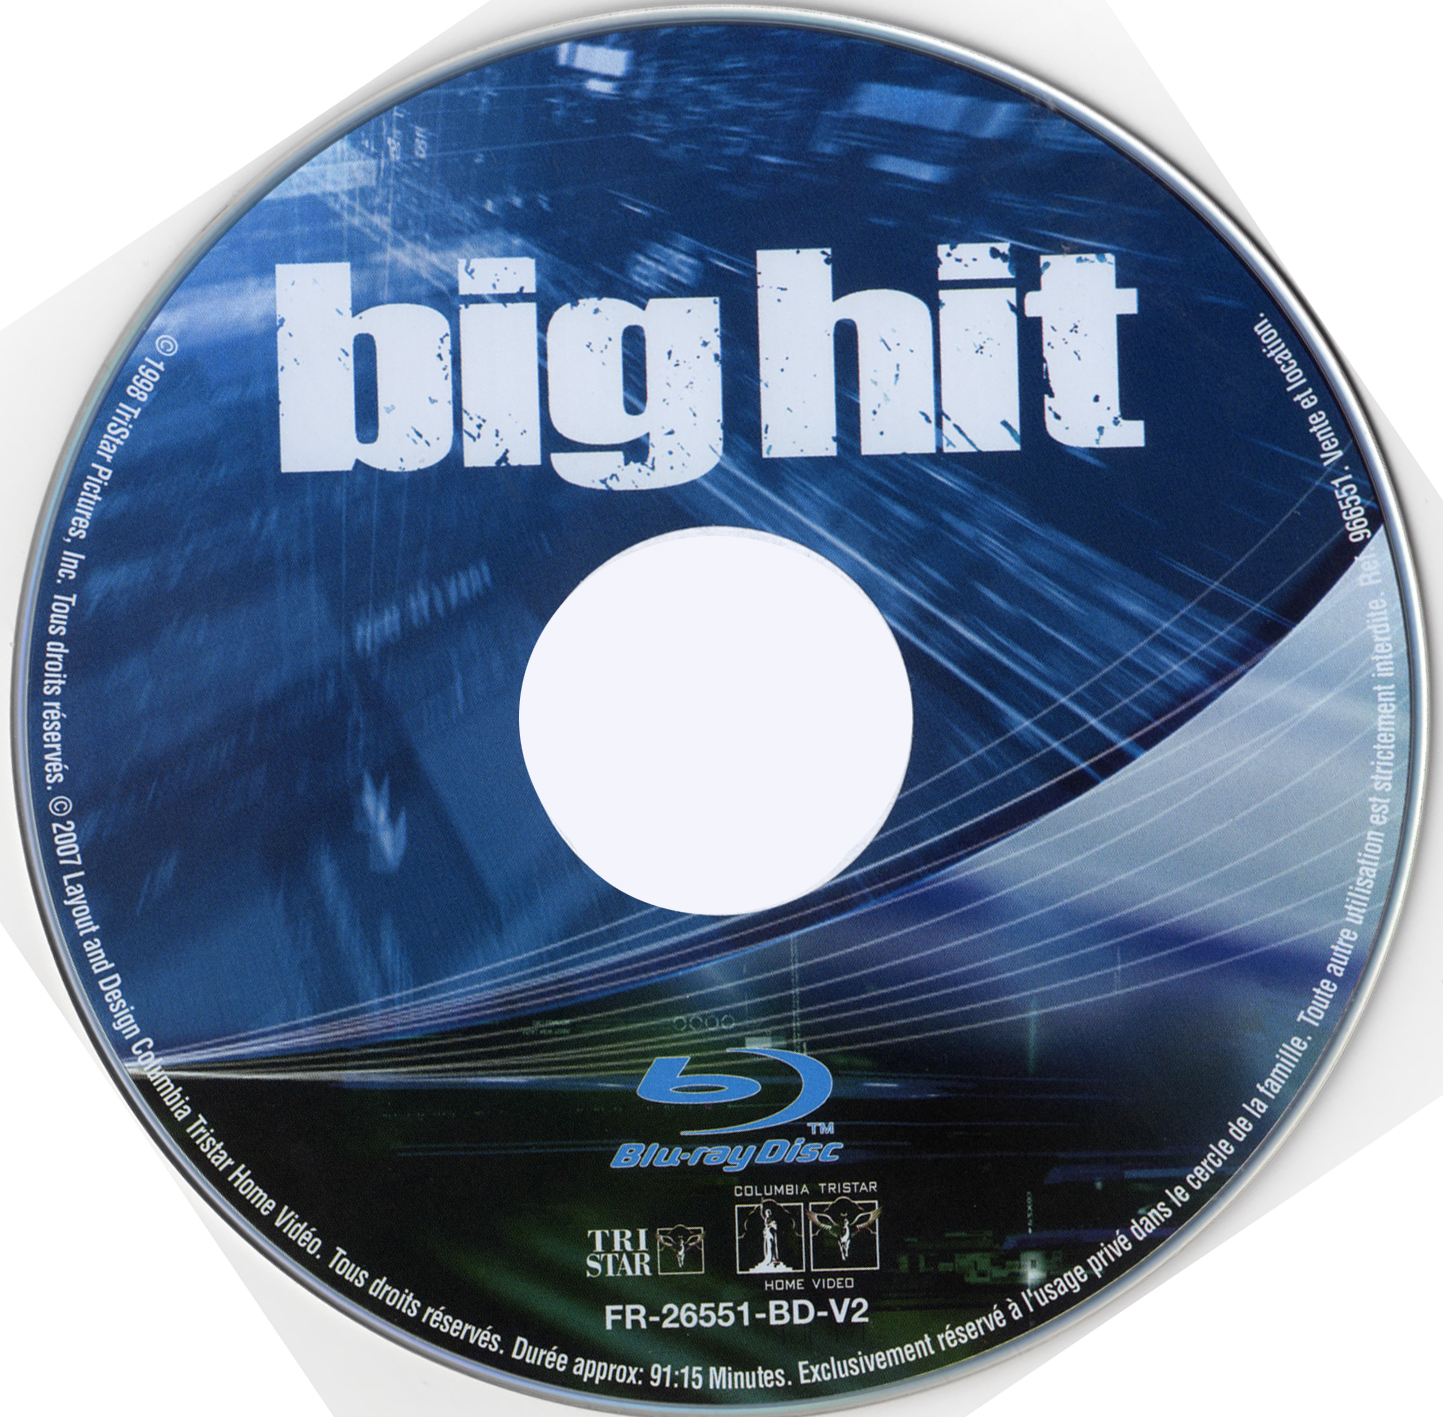 Big hit (BLU-RAY)